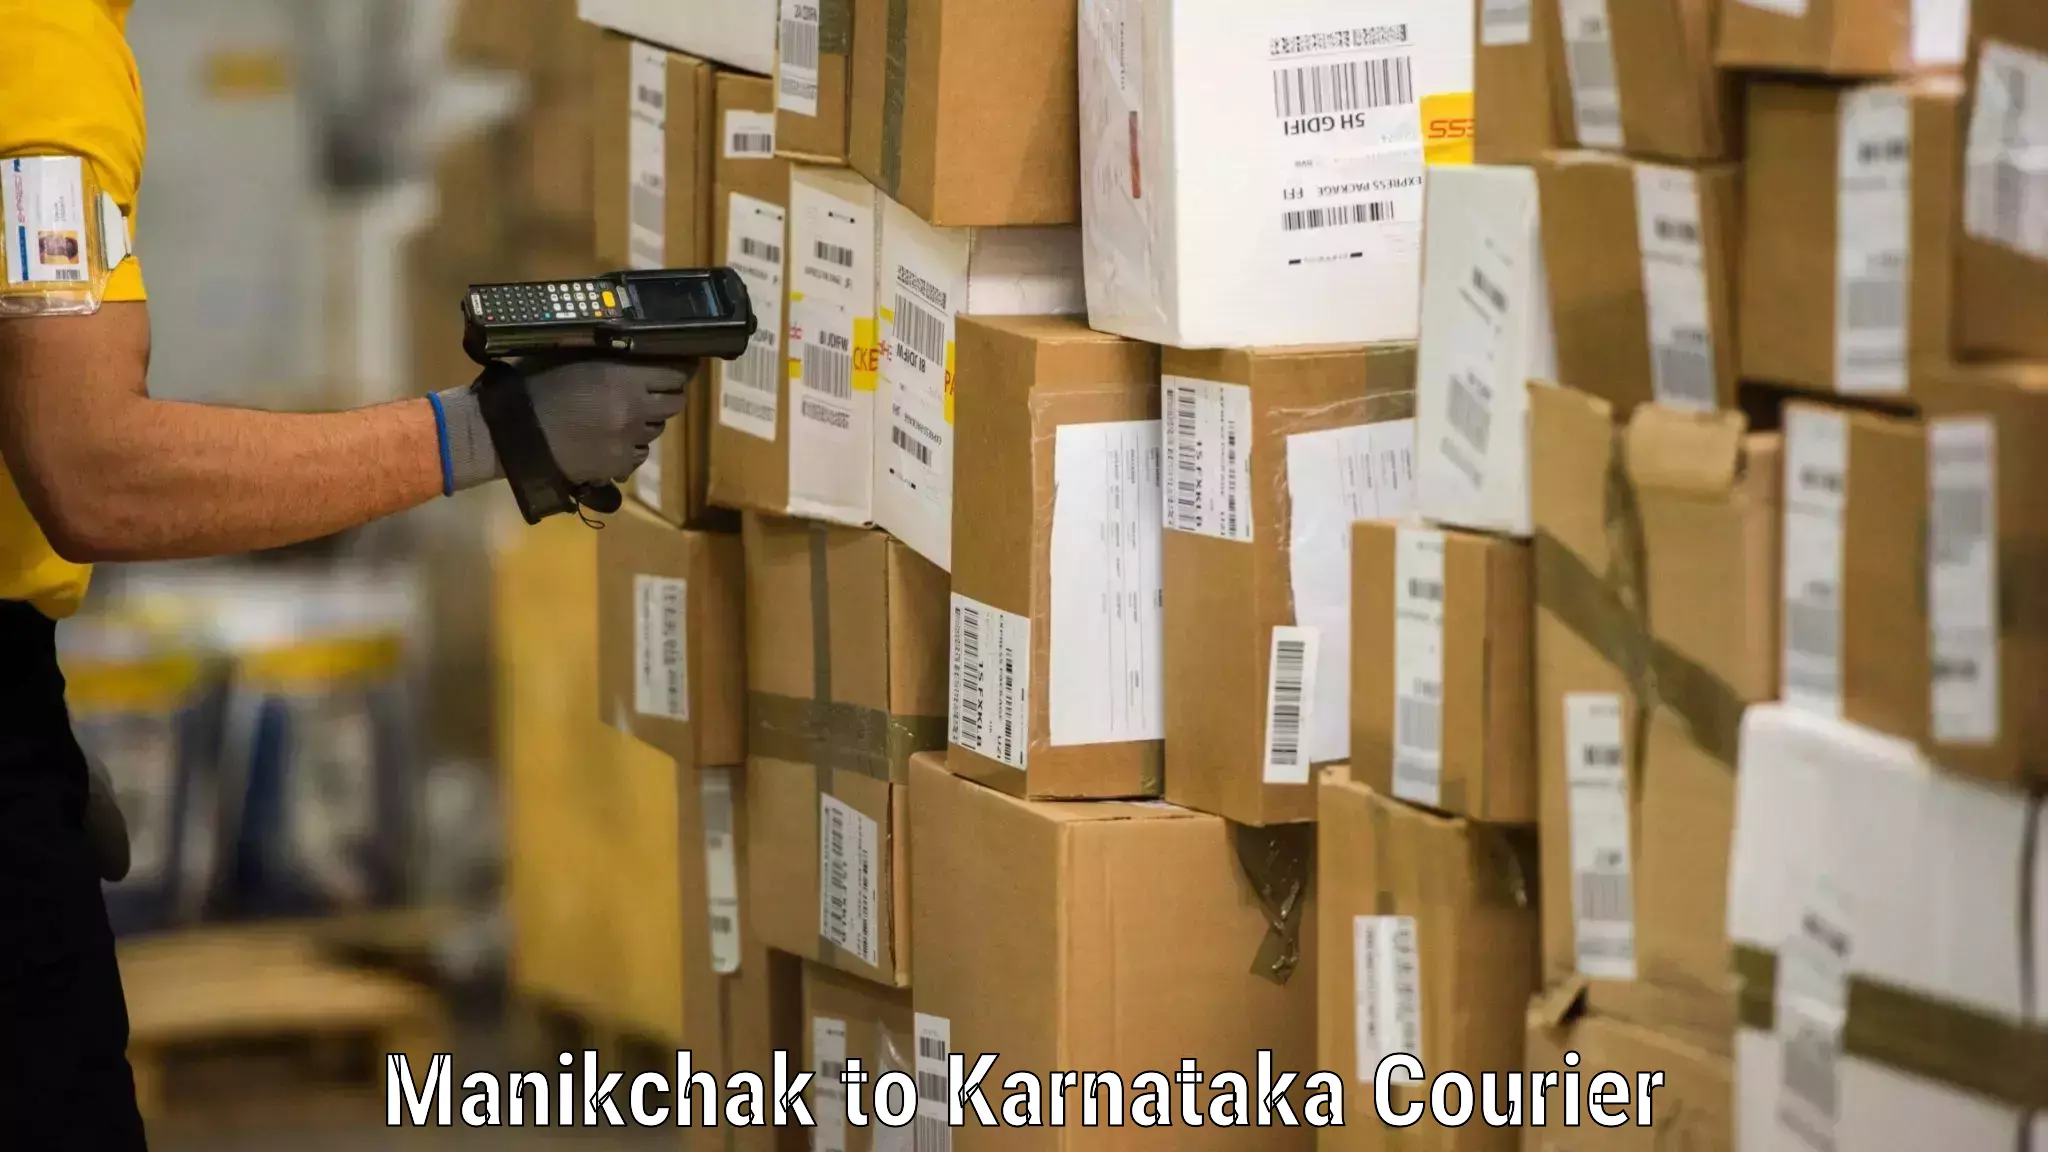 Furniture moving service Manikchak to Karnataka